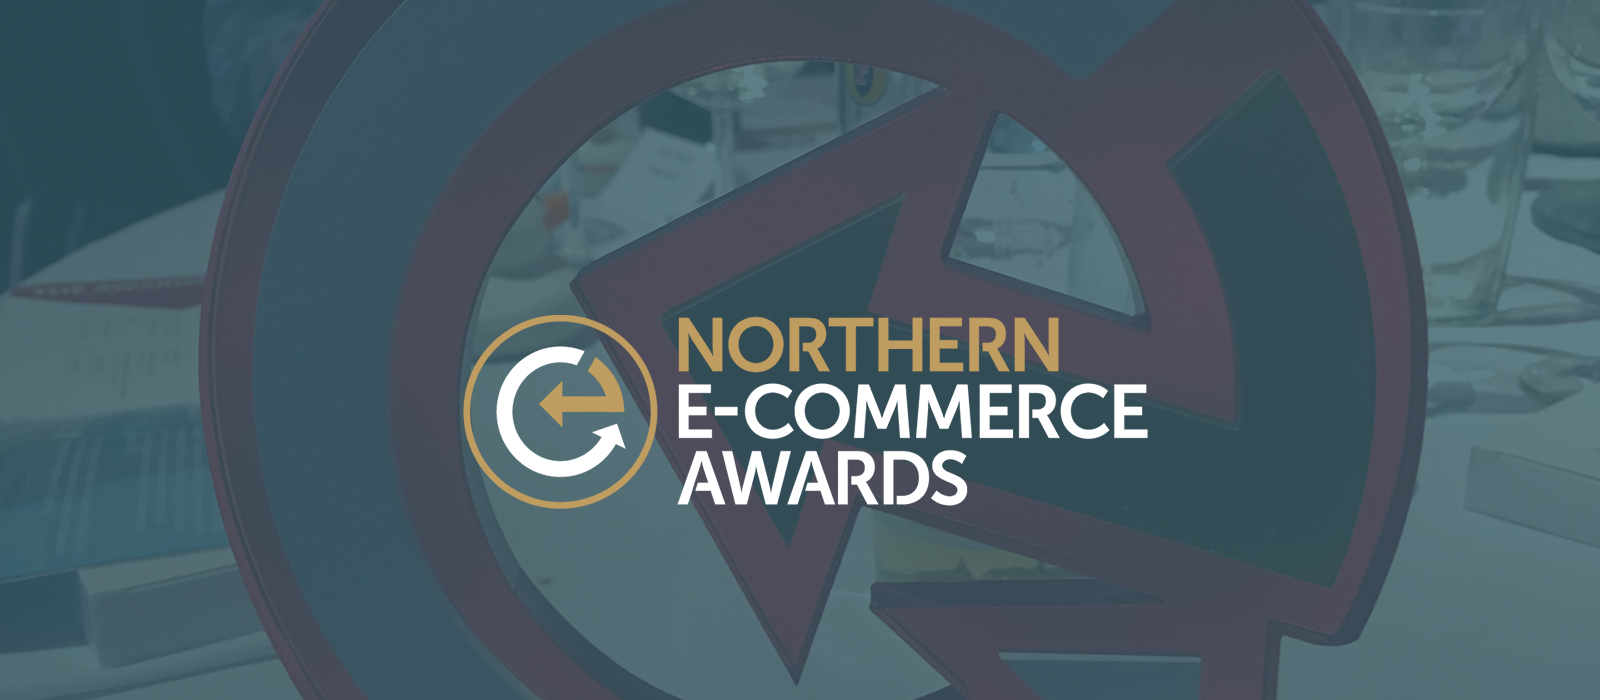 we've-won-northern-ecommerce-awards-hero-image